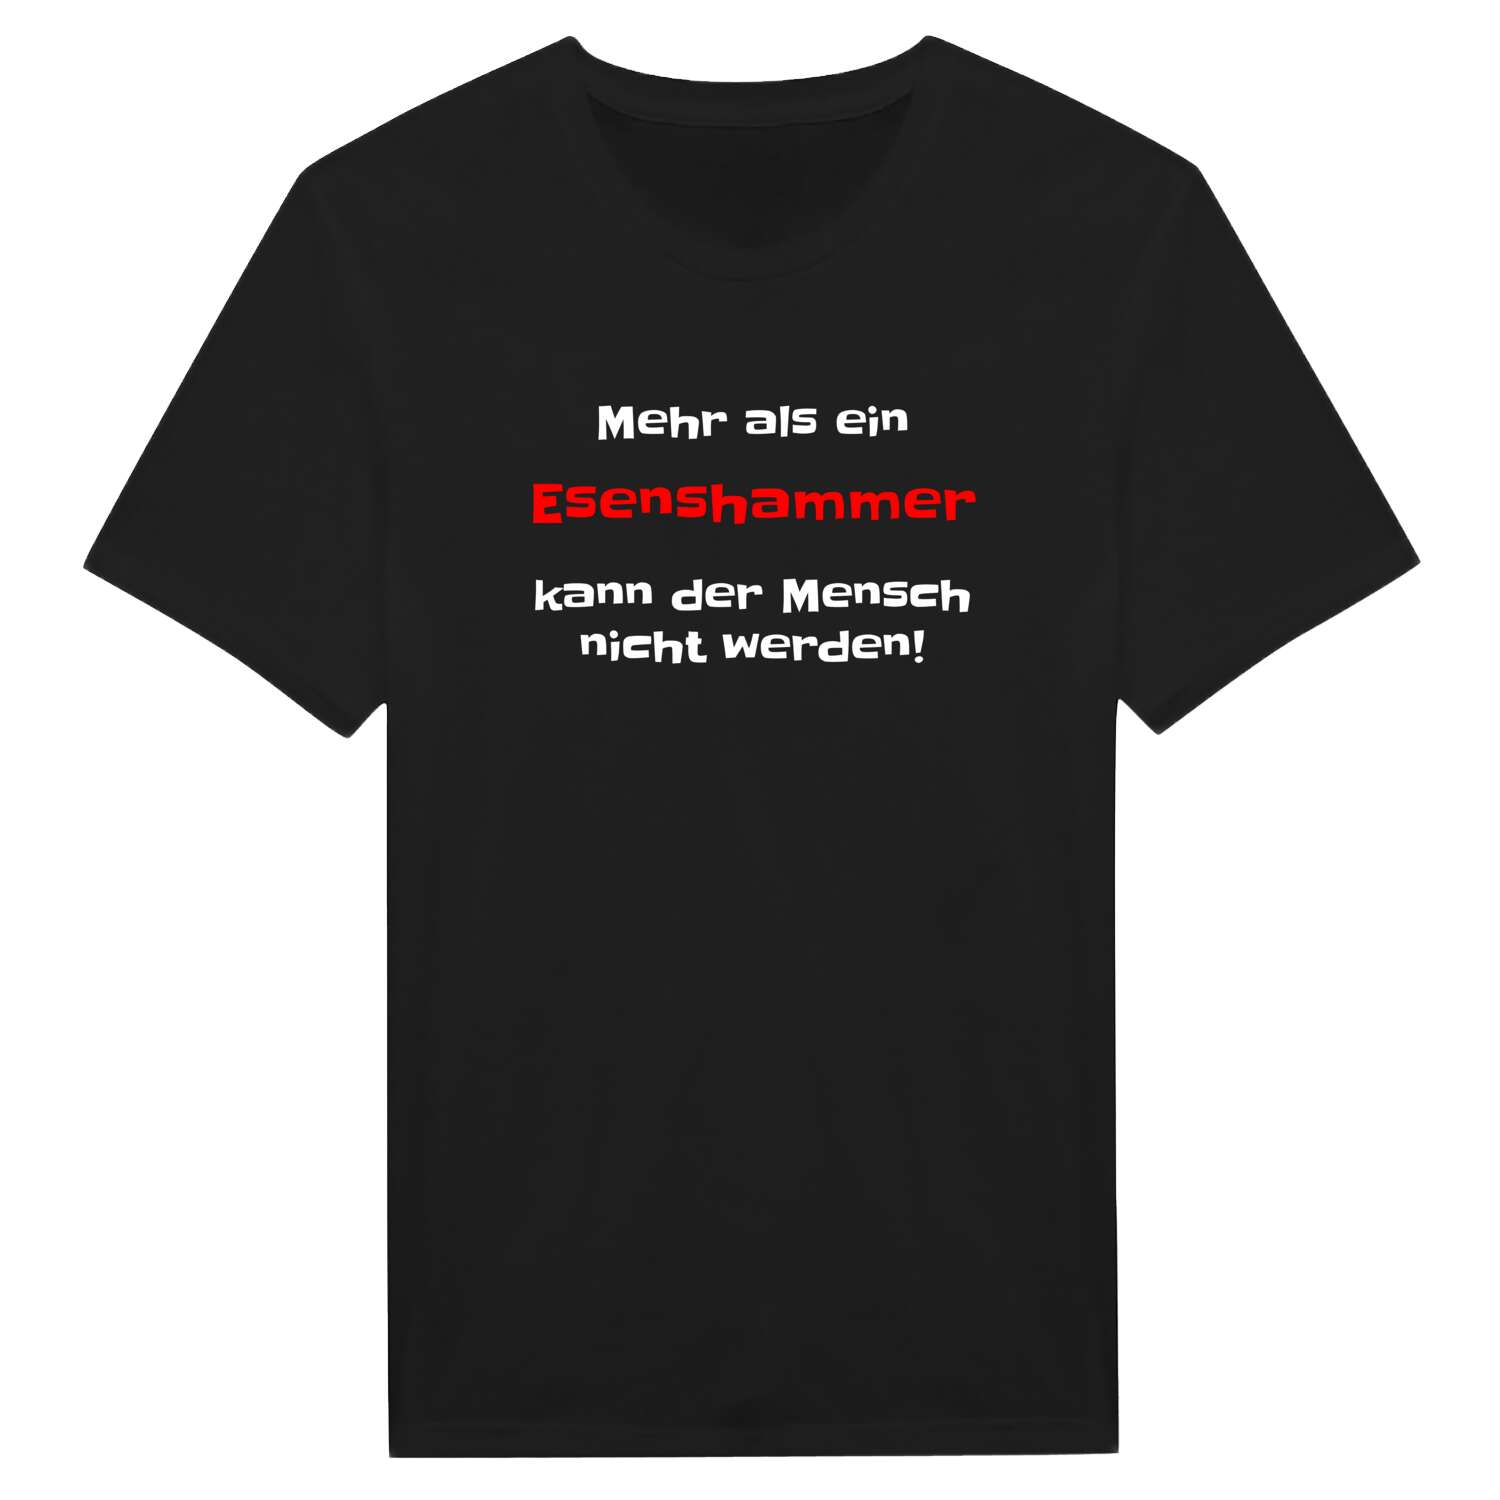 Esenshamm T-Shirt »Mehr als ein«